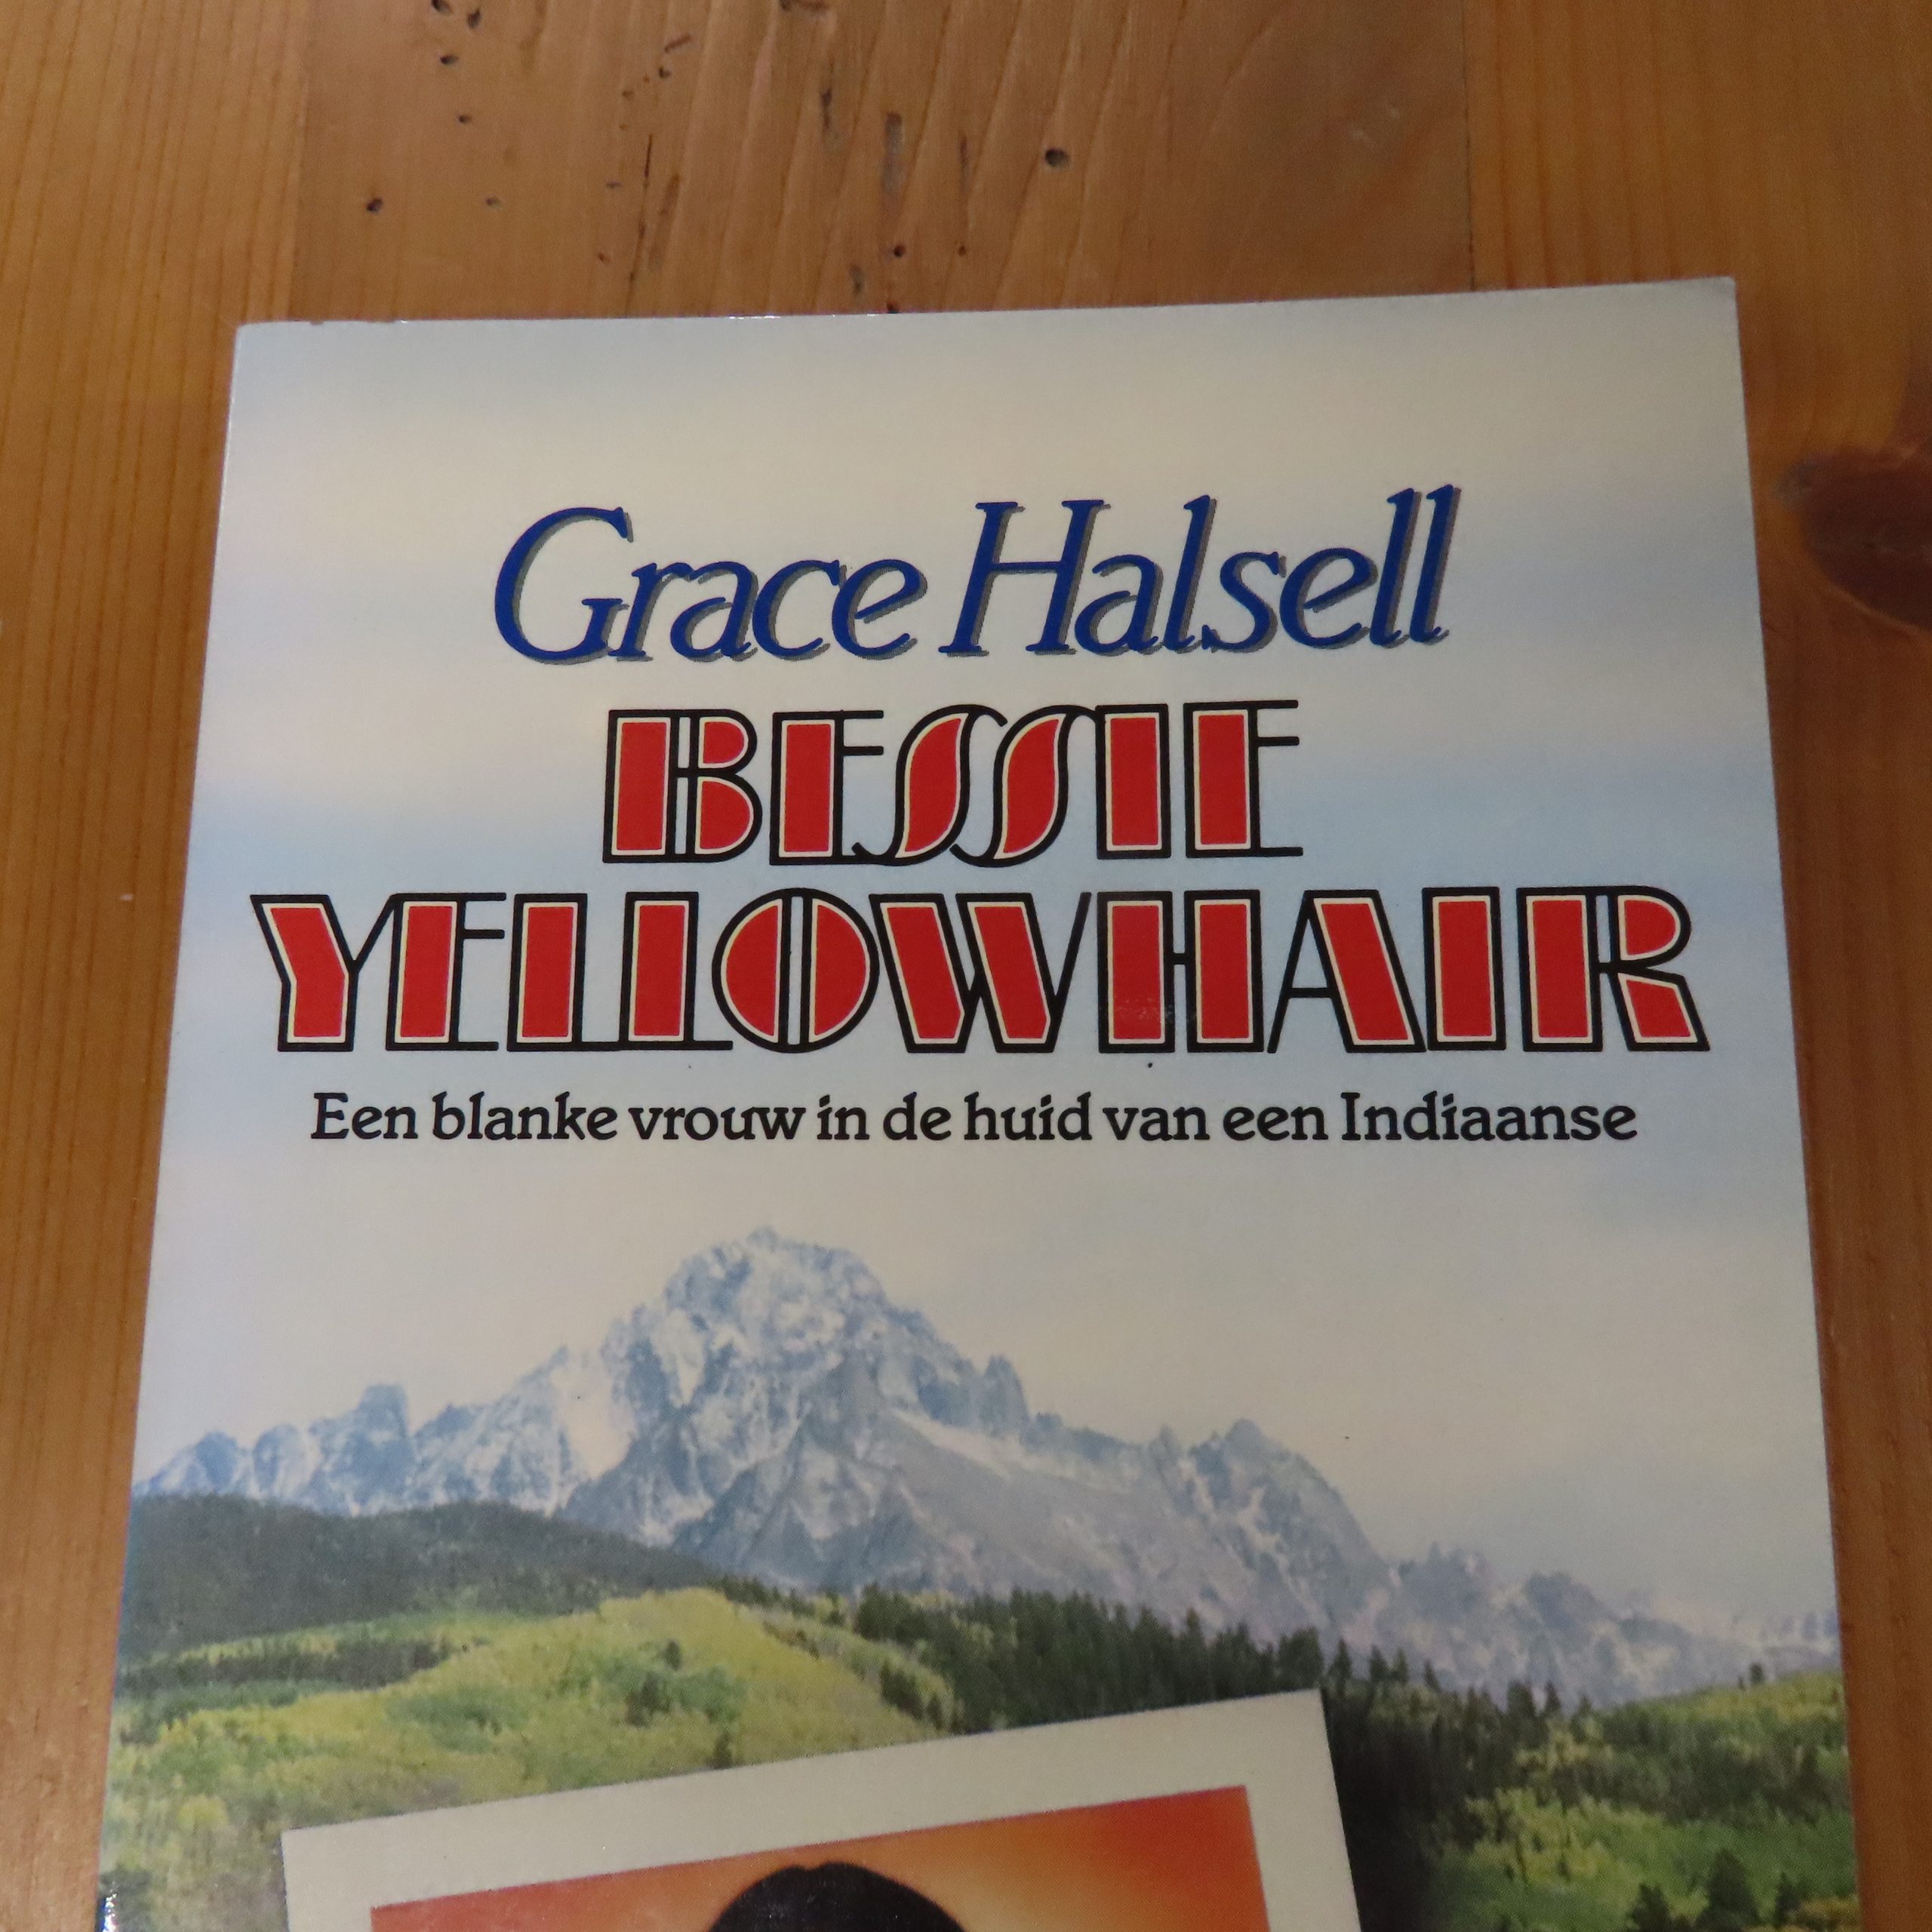 Boek “Bessie Yellowhair” van Grace Halsell